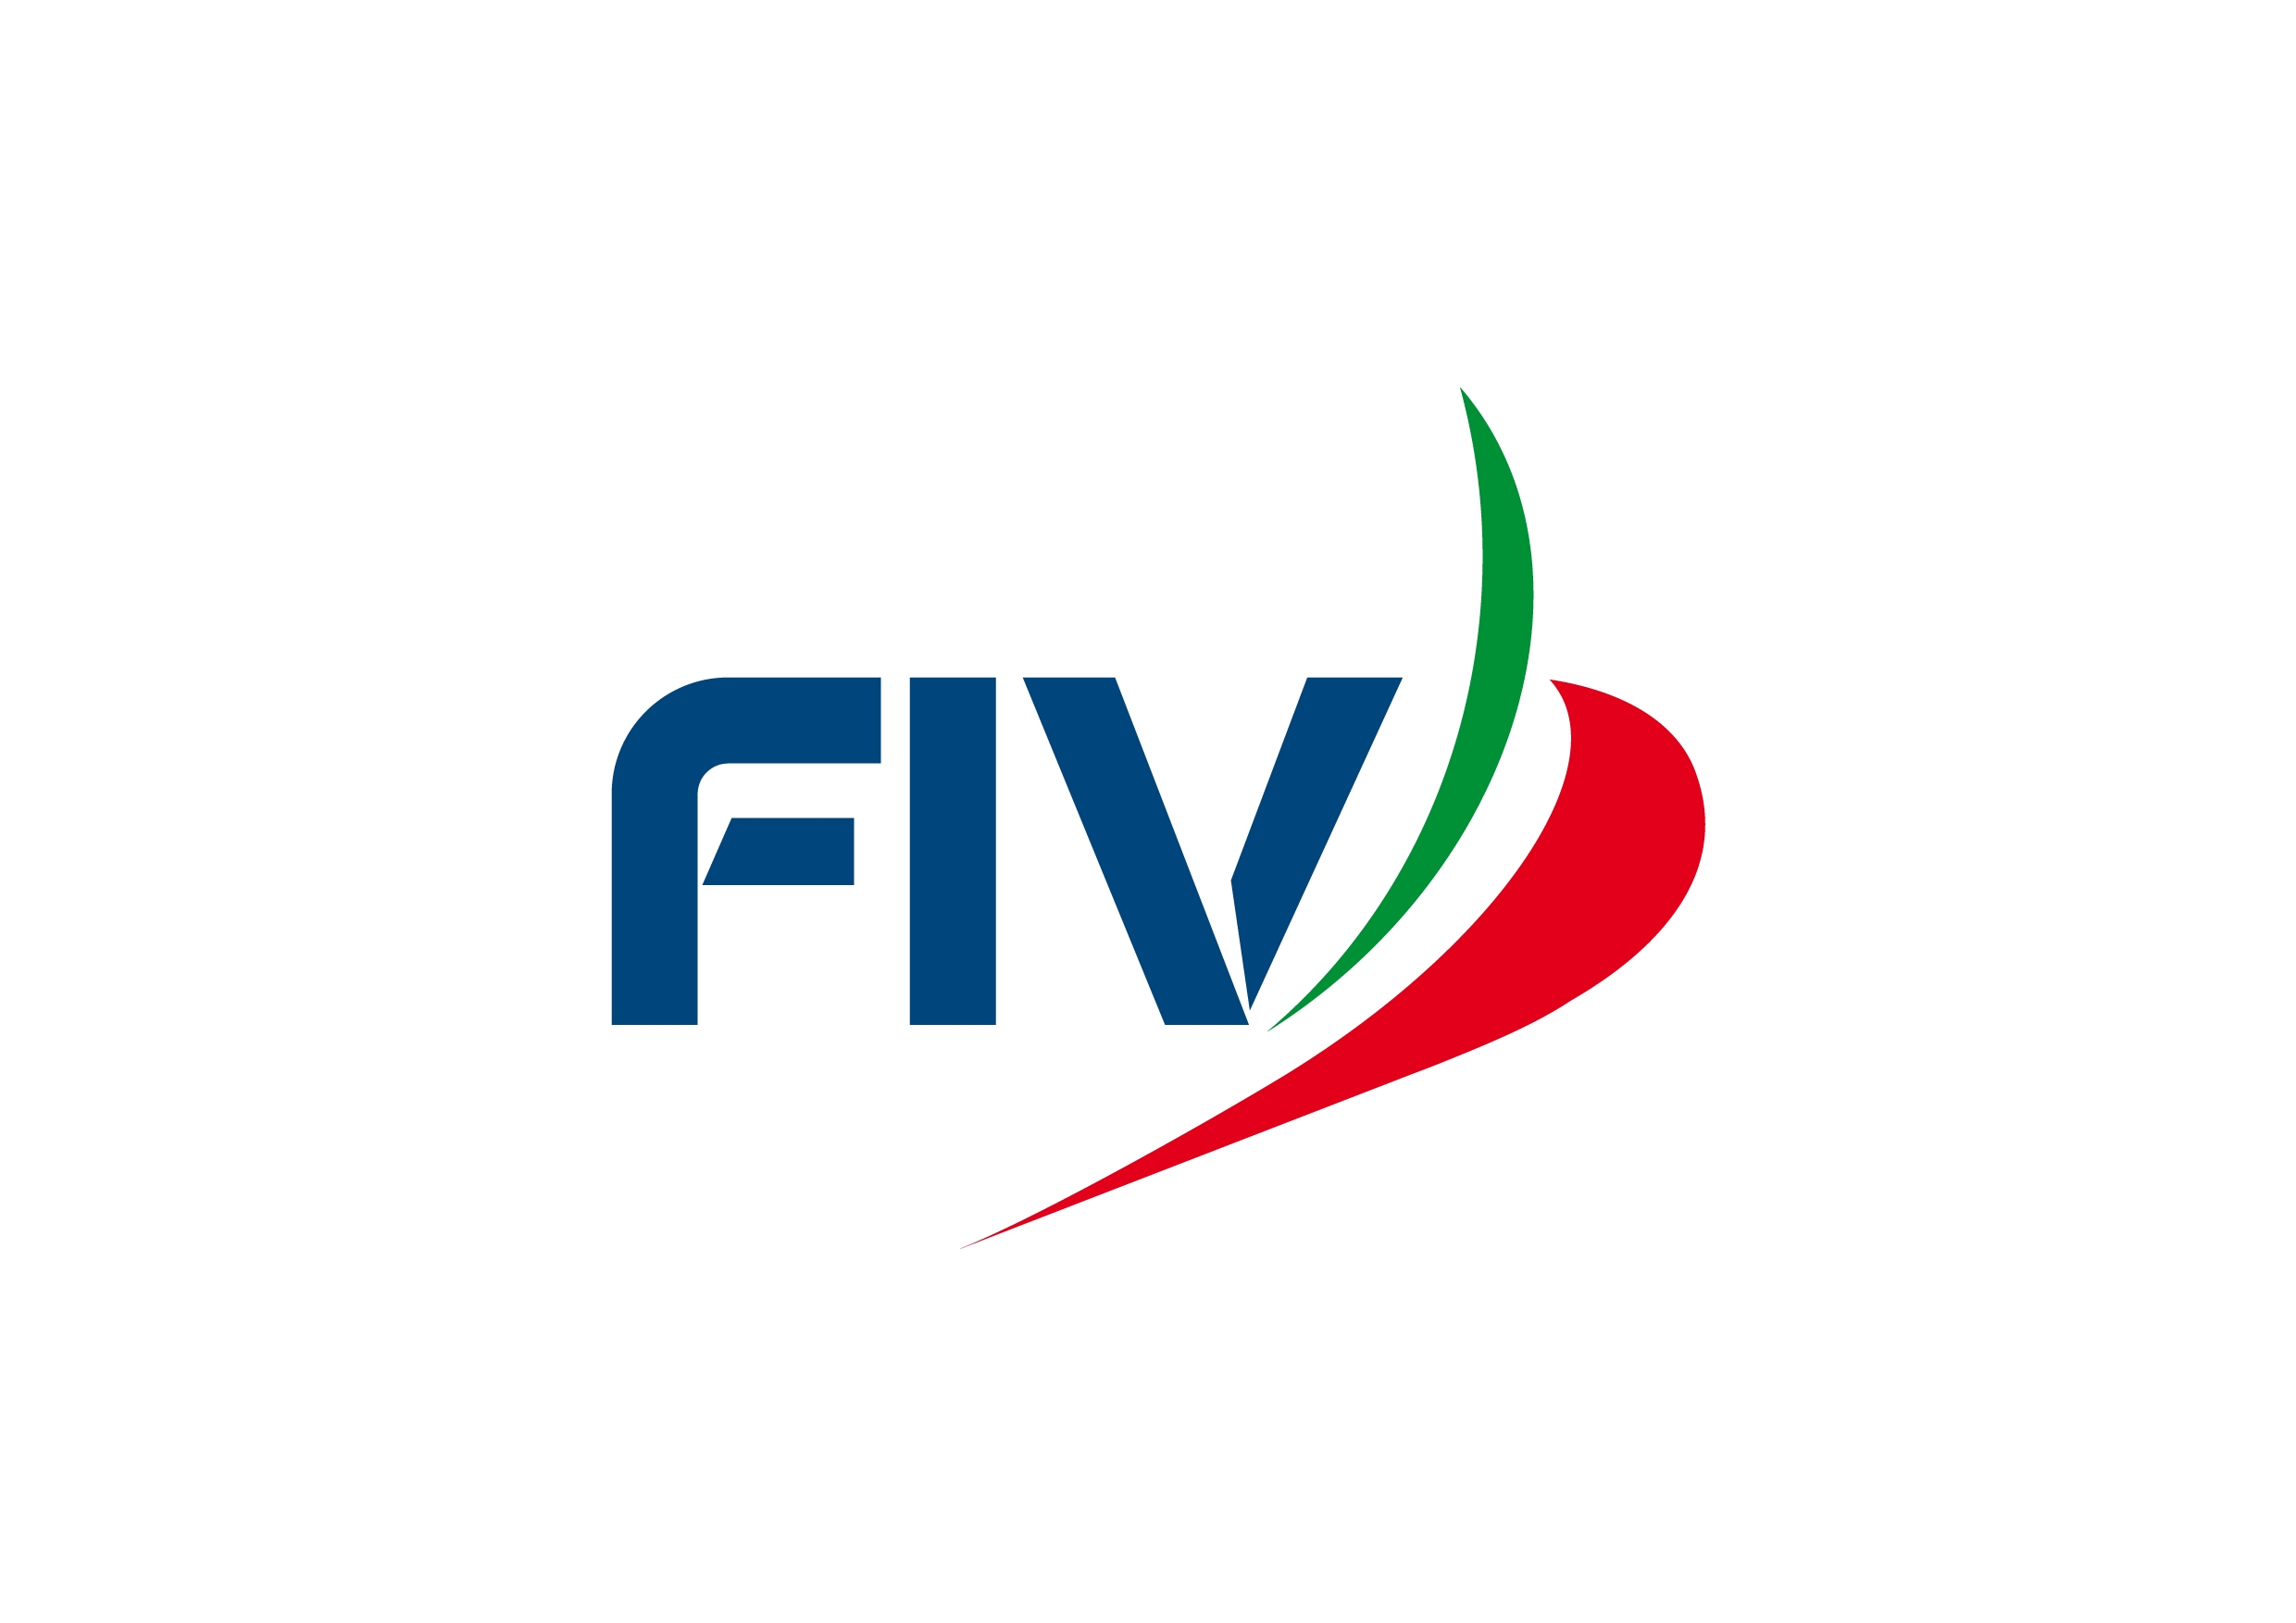 images/fiv/fiv_logo_11.jpg